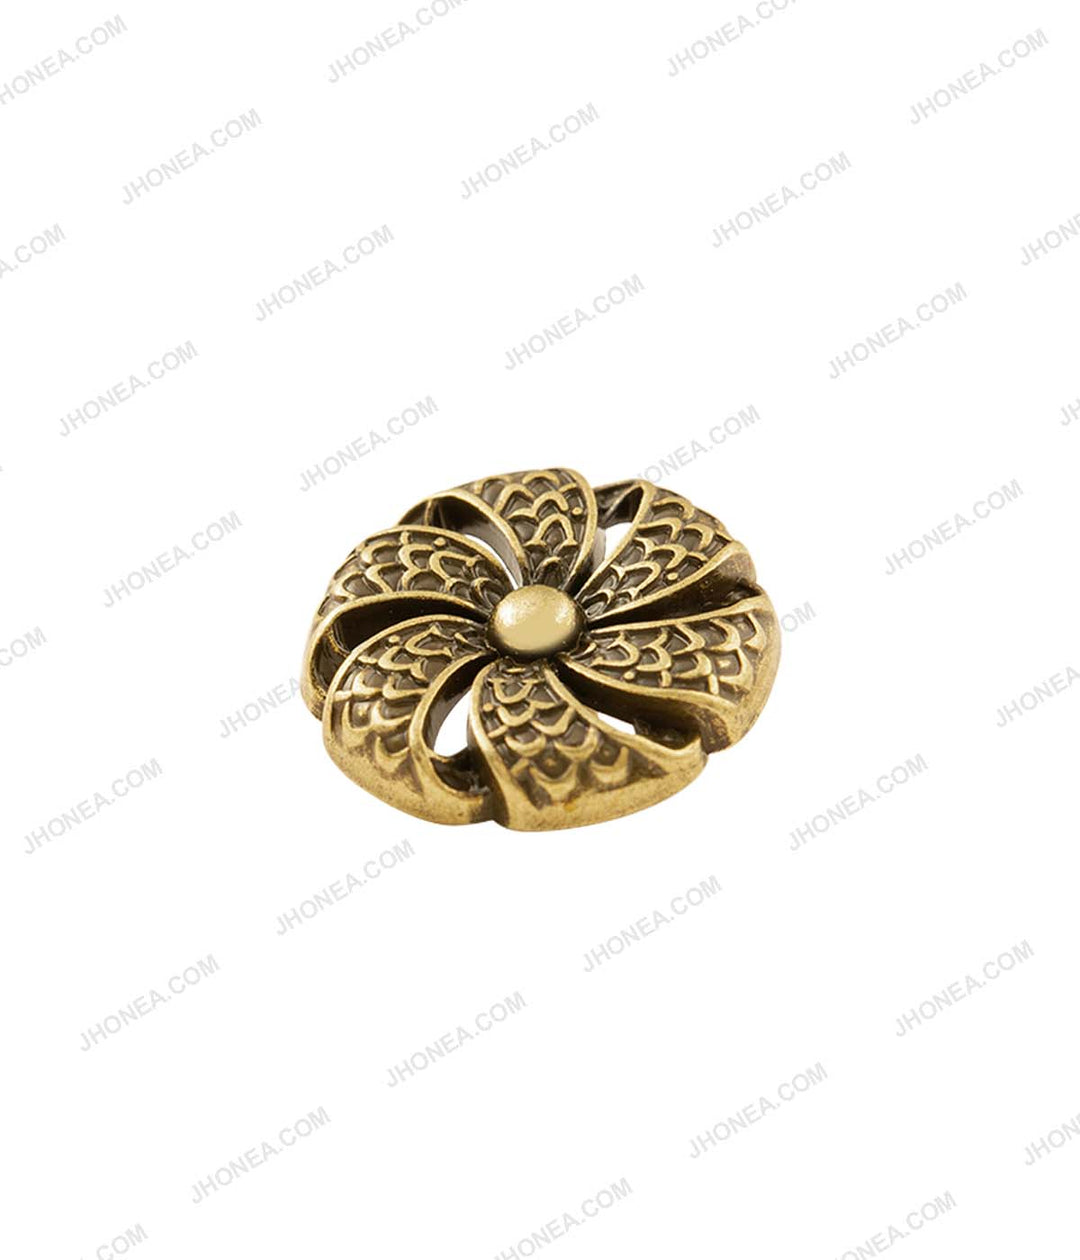 Antique Ancient Tibetan Style Flower Design Antique Gold Metal Buttons